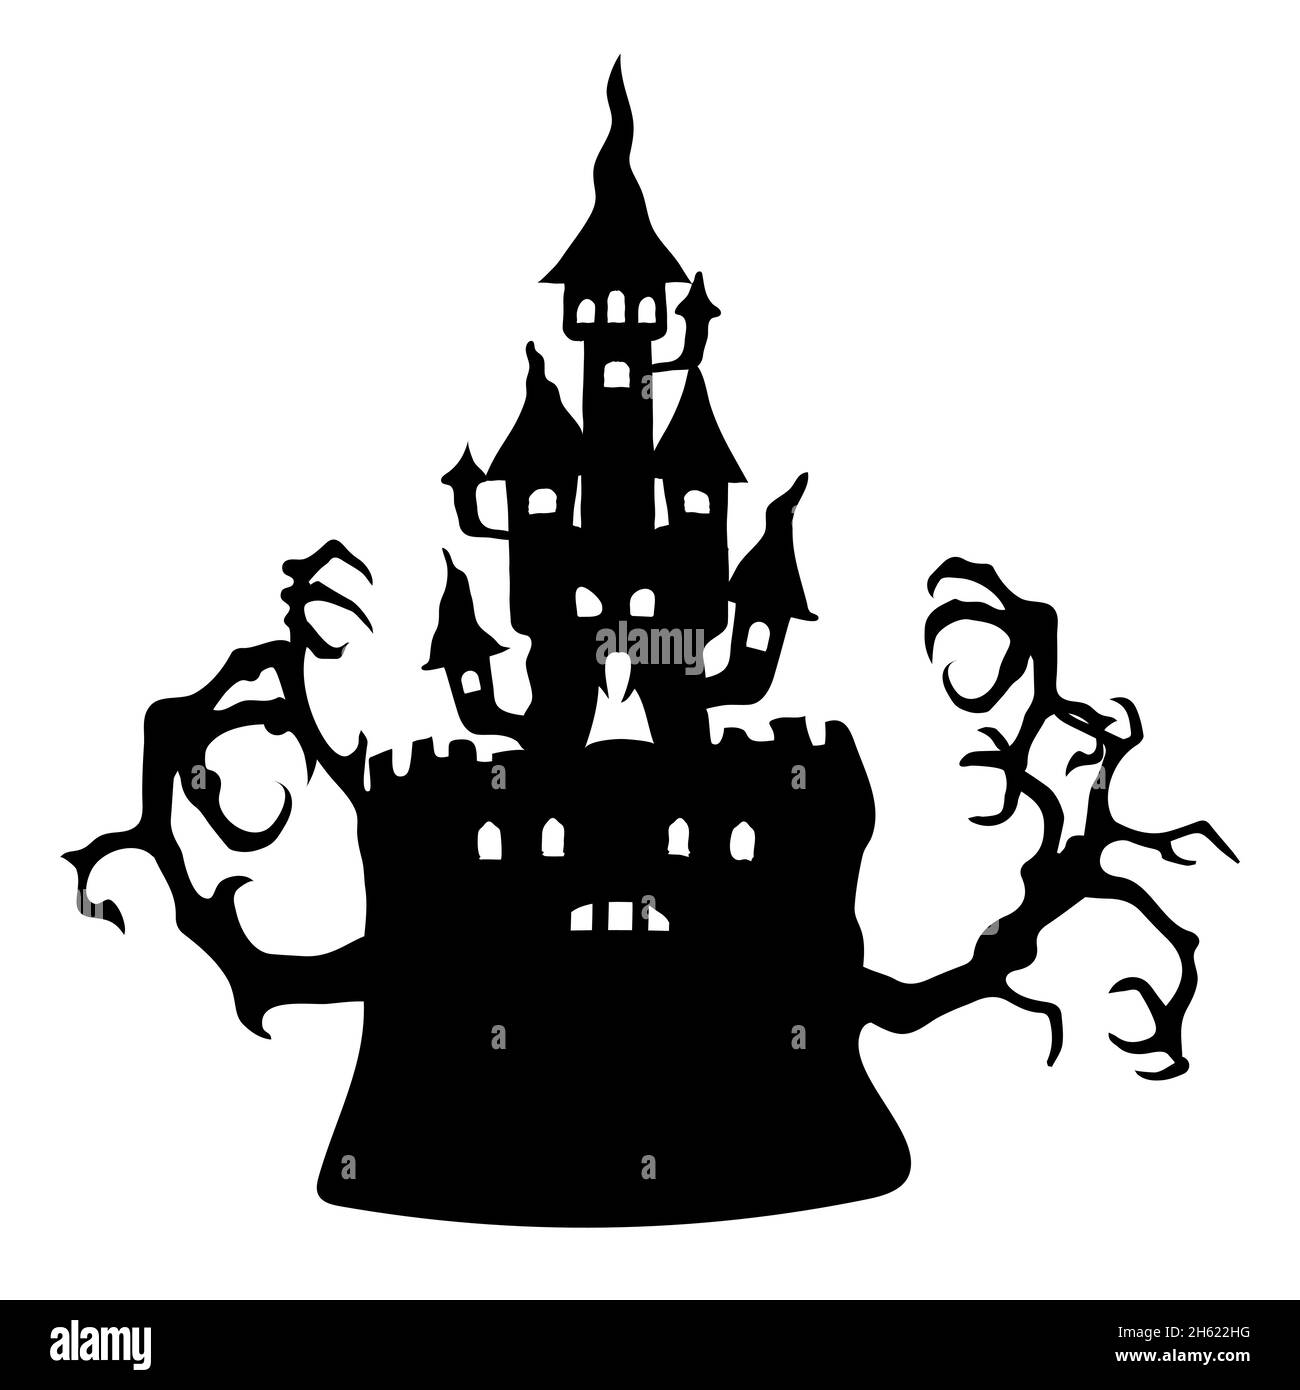 Silhouette di un castello sinistro con rami d'albero per Halloween. Immagine vettoriale su sfondo bianco. Illustrazione Vettoriale